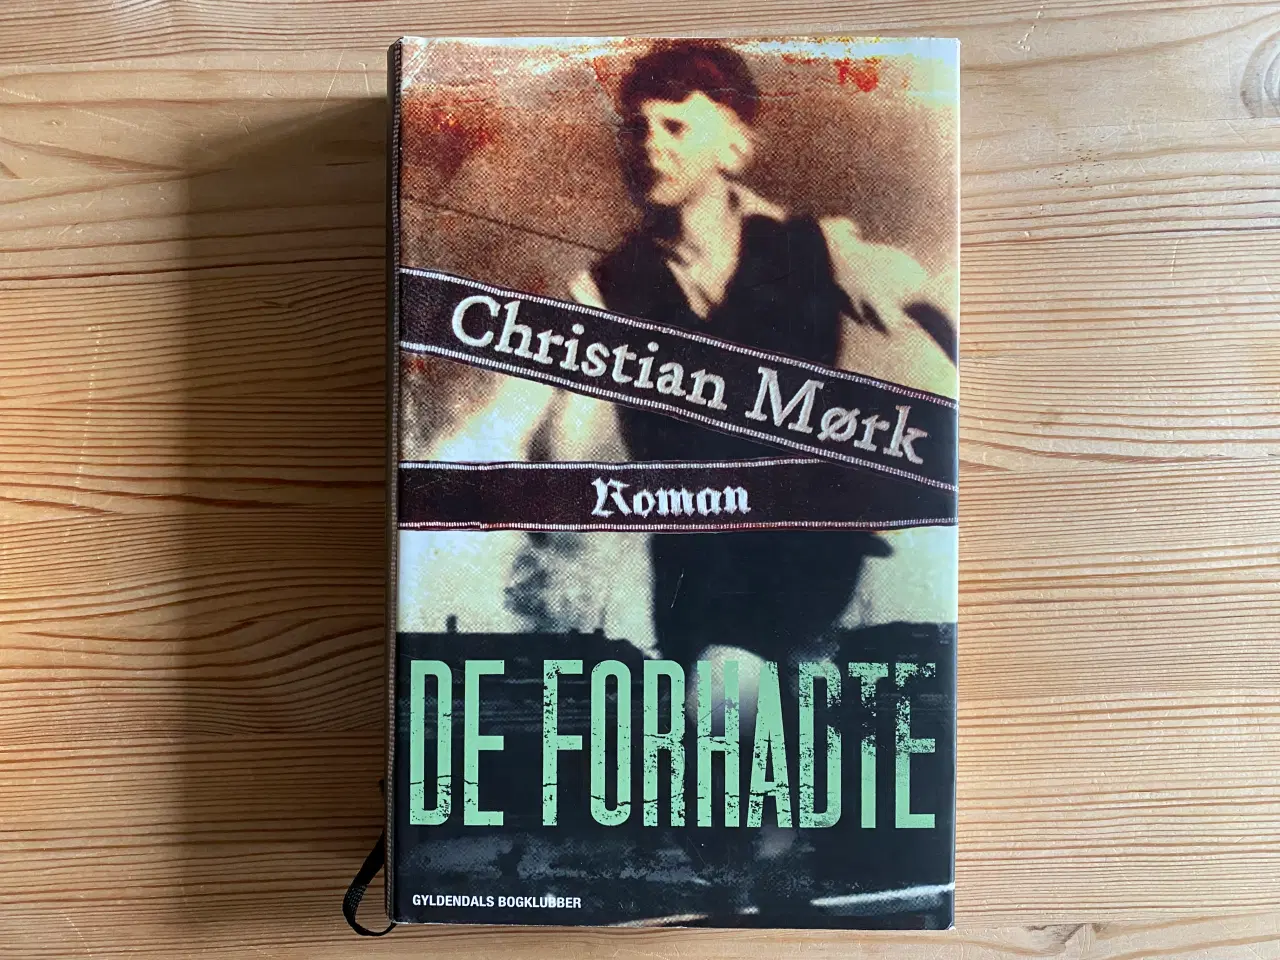 Billede 2 - Christian Mørk, 3 romaner